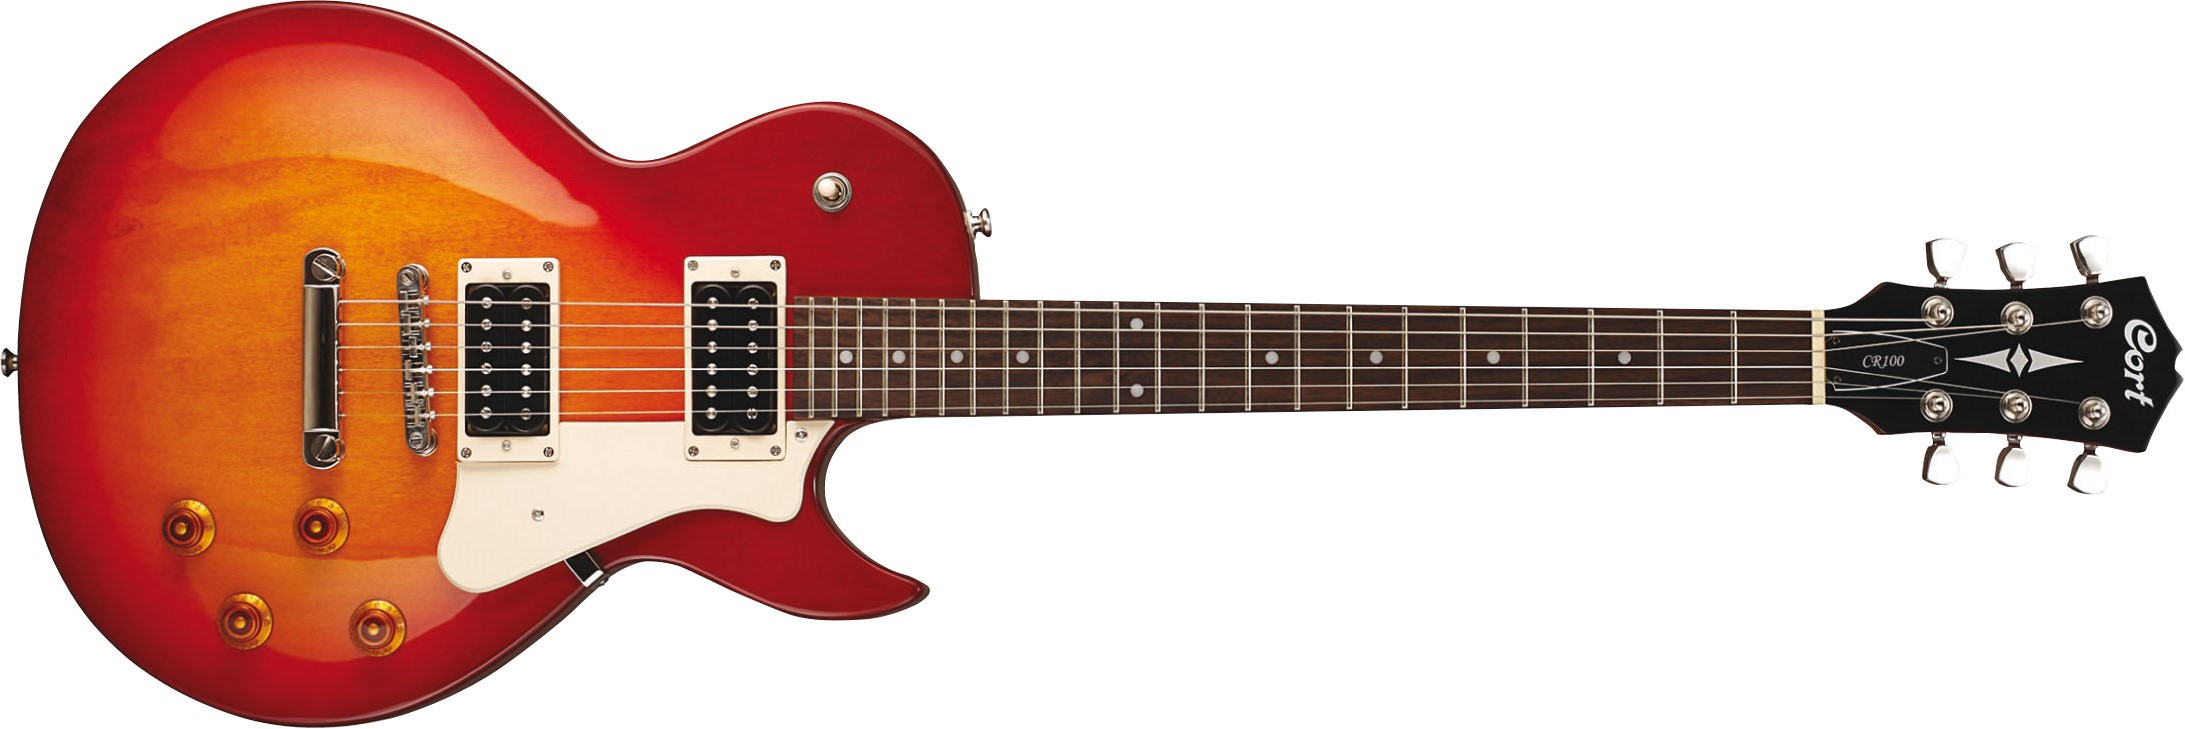 Cort Cr100 Crs Classic Rock Hh Ht - Cherry Red Sunburst - Guitare Électrique Single Cut - Variation 1